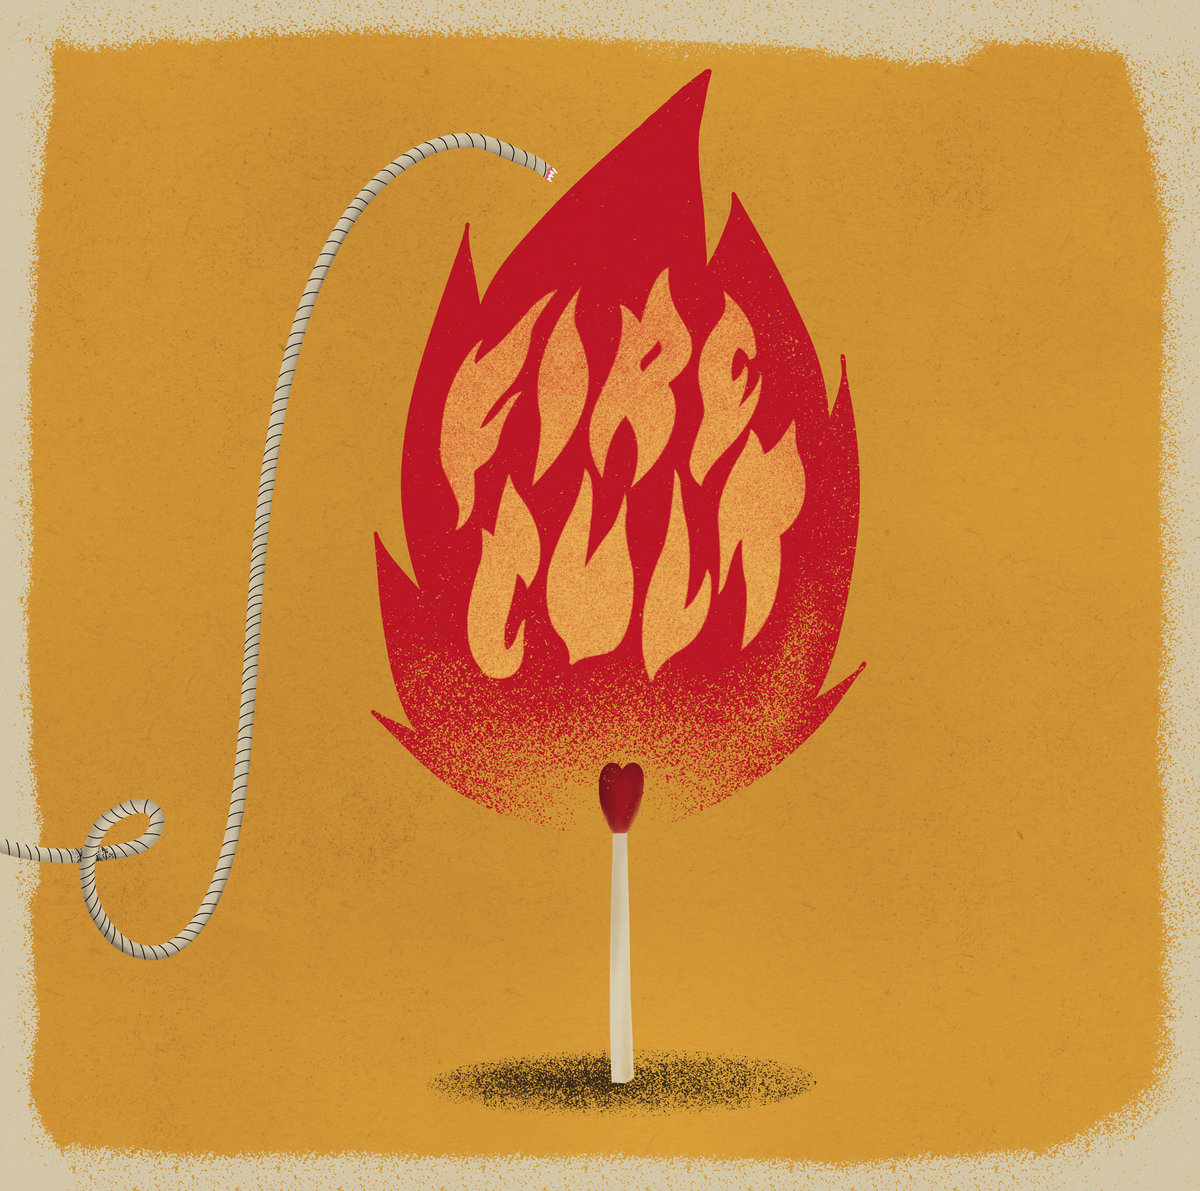 Fire Cult "We die alive" LP